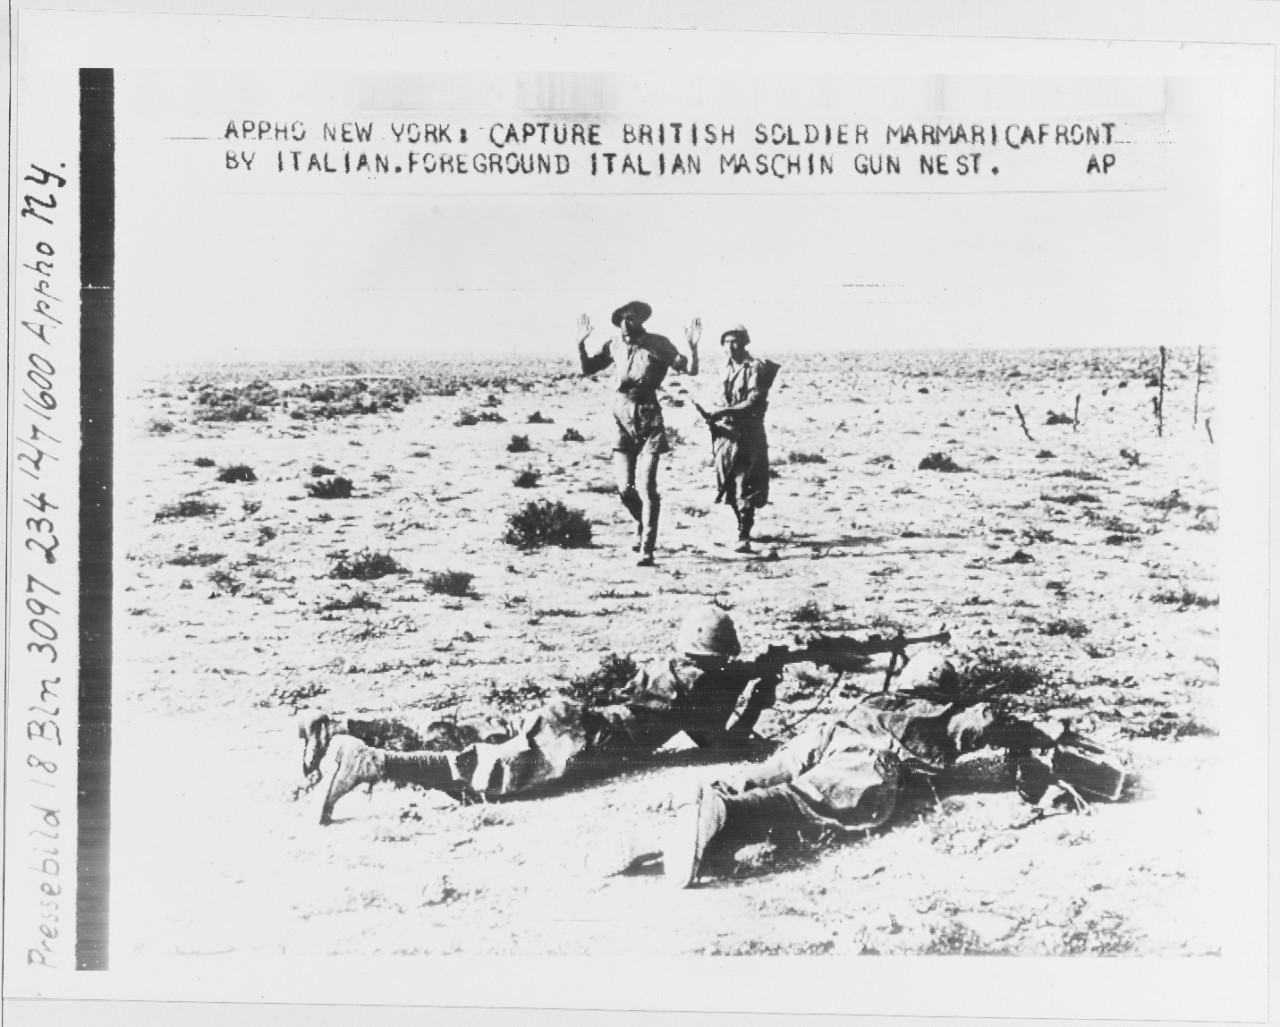 British soldier captured by Italian